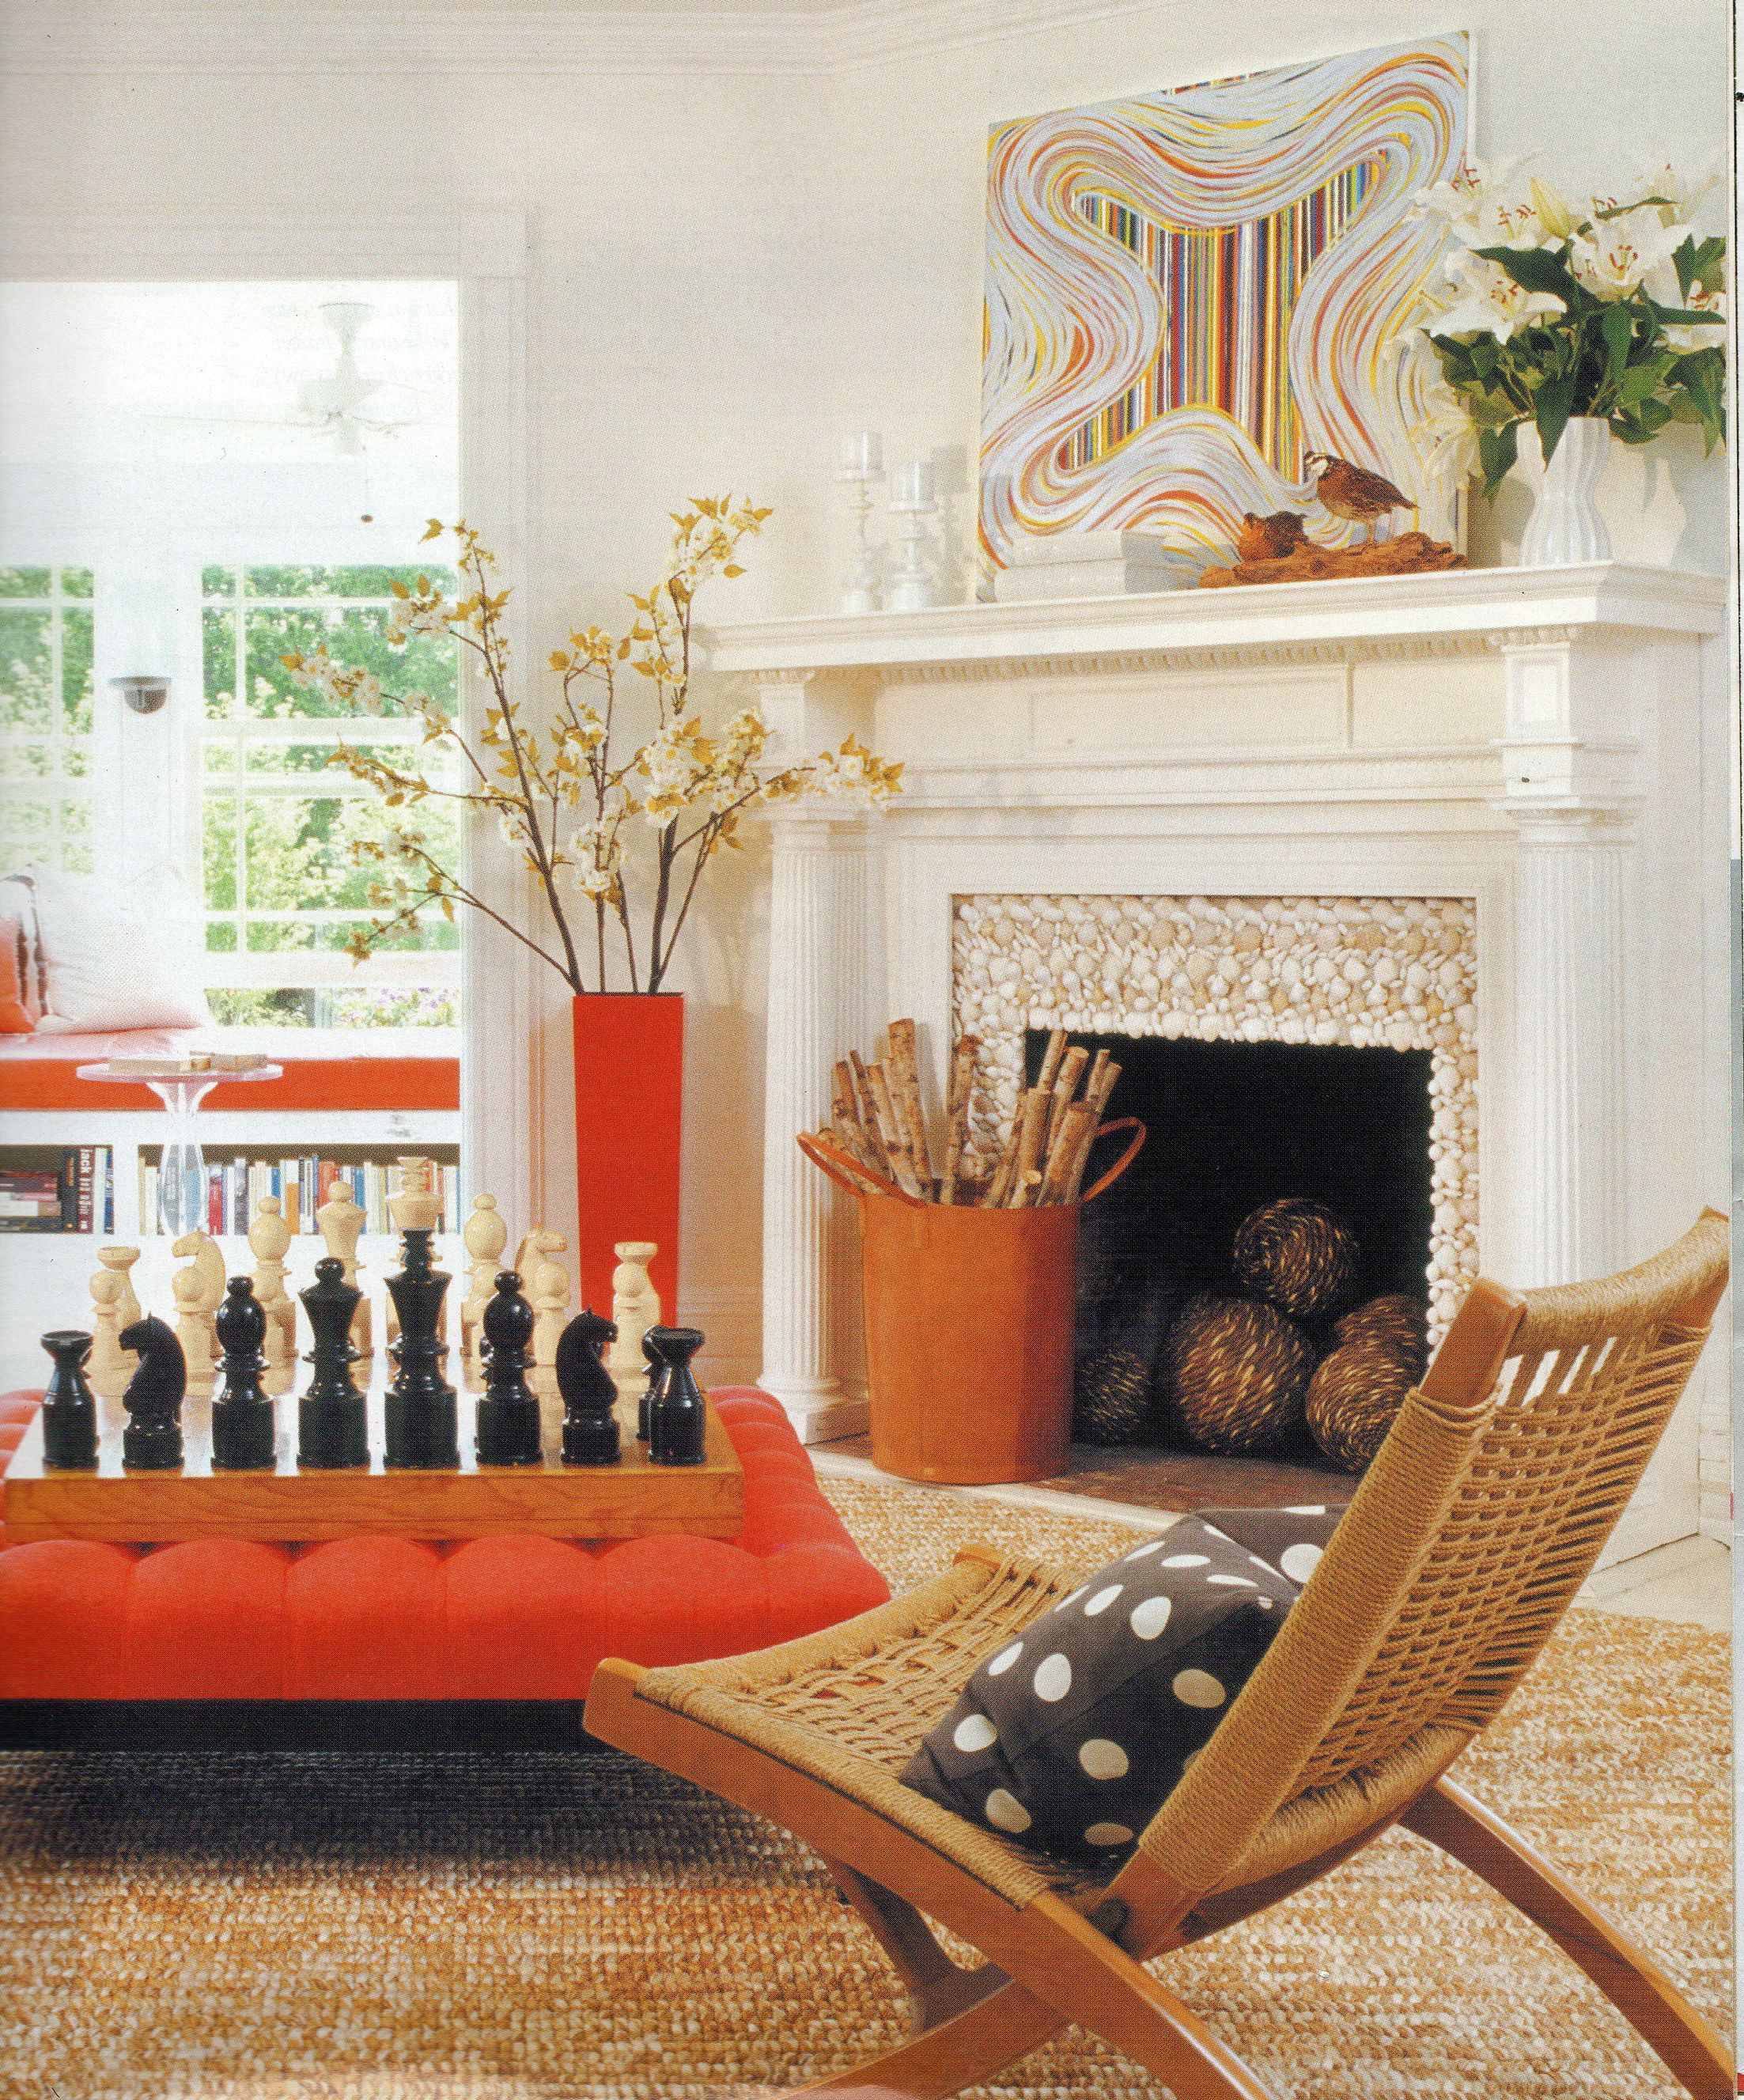 这个客厅的精致色彩选择脱离了常见的客厅配色方案，加入了橙色。摆放着棋盘和超大棋子的中央搁脚凳、花瓶、窗凳、柴火架和艺术品都引人注目。